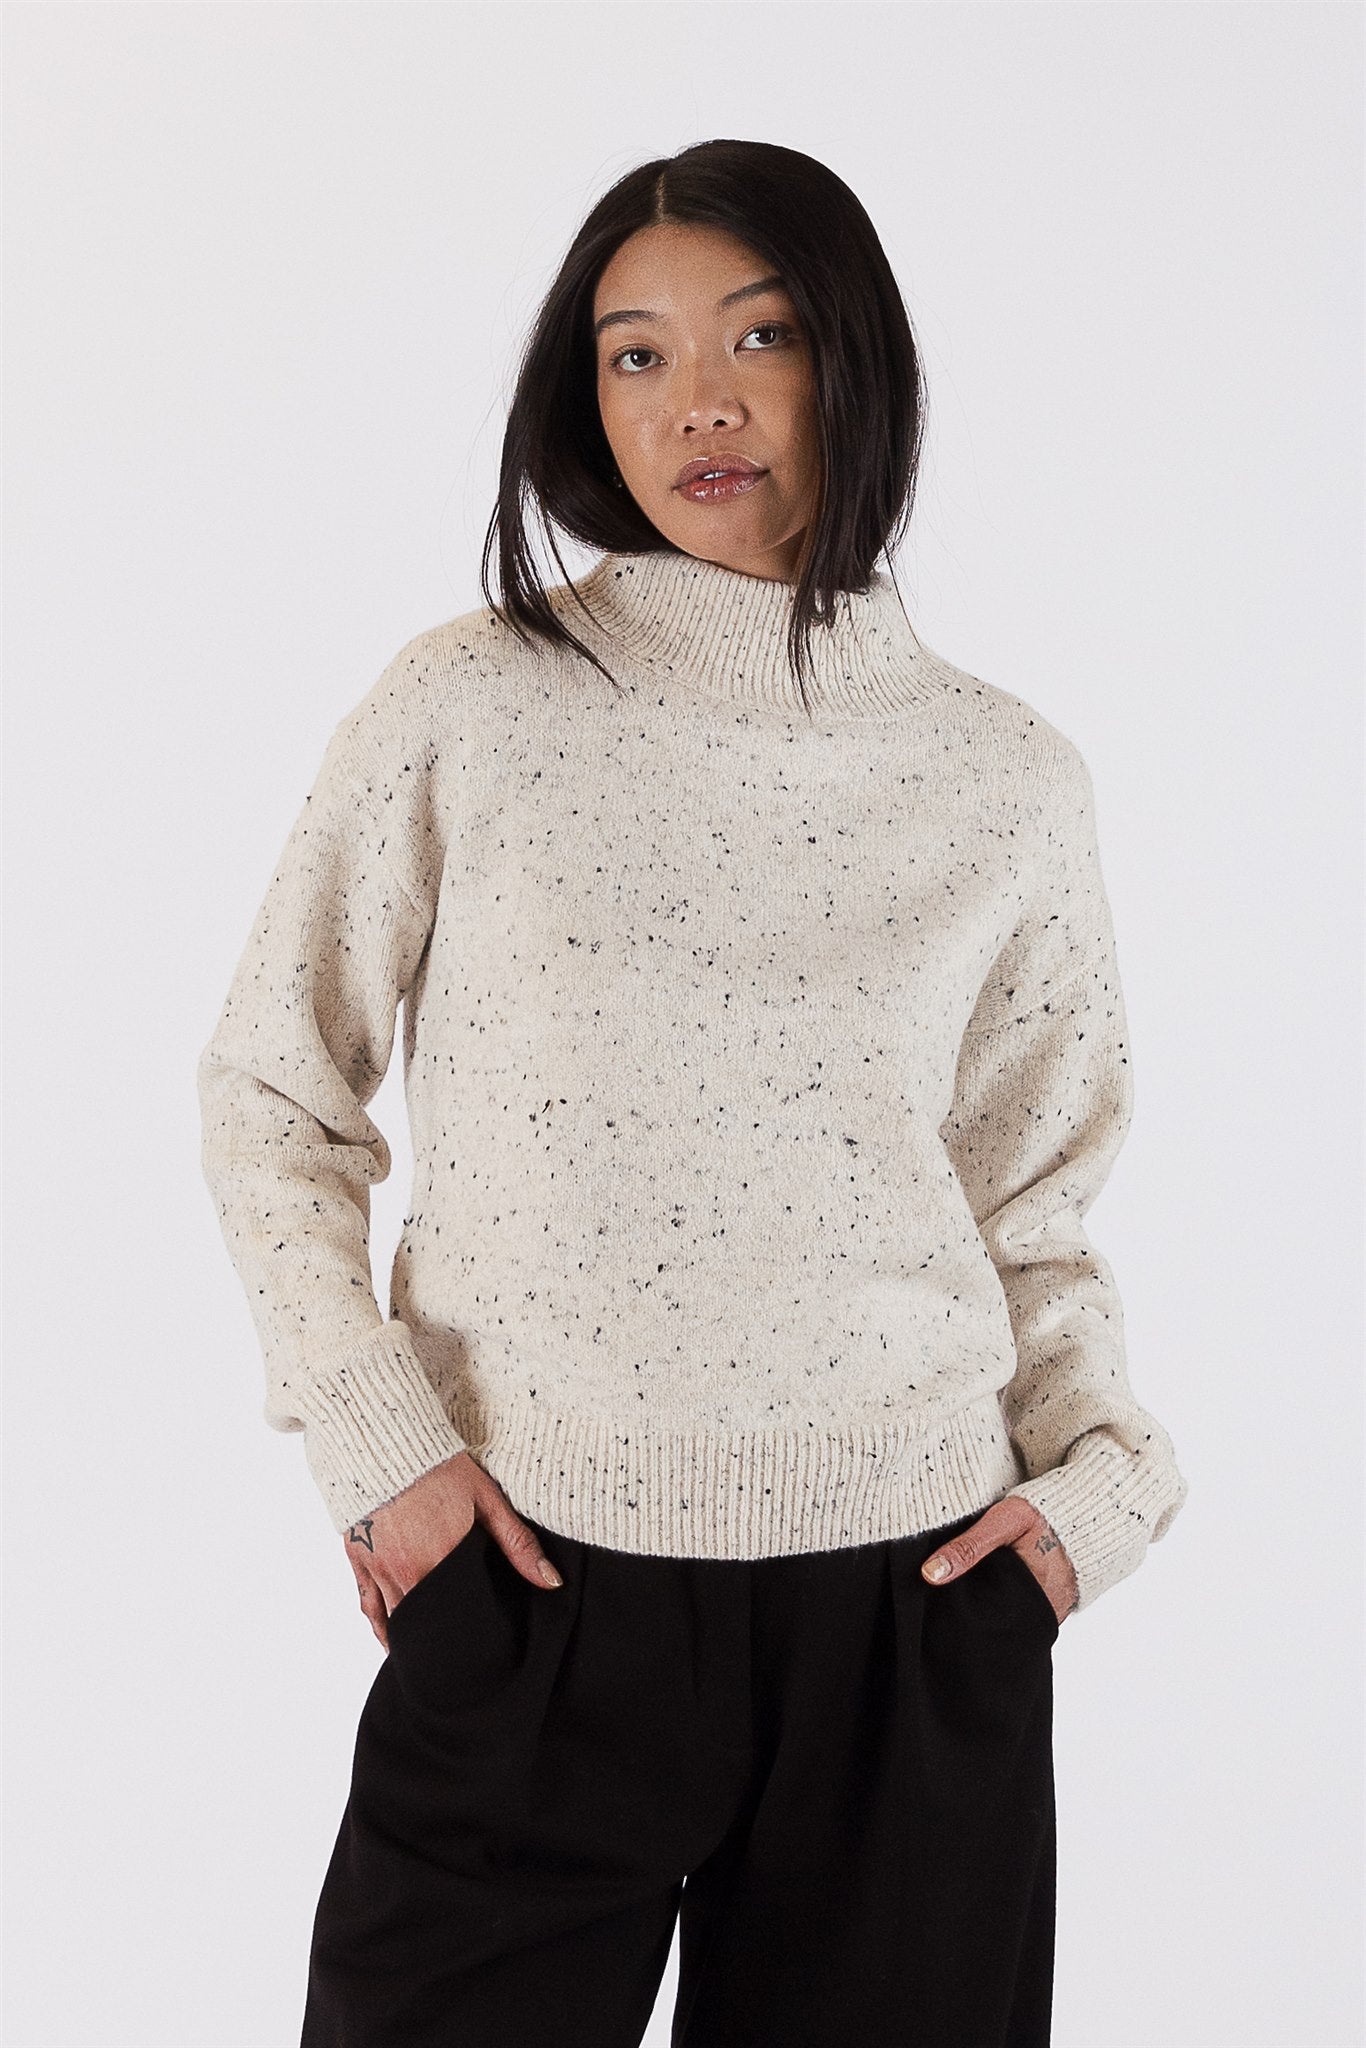 Lyla+Luxe Top - Fleck Sweater - Oak